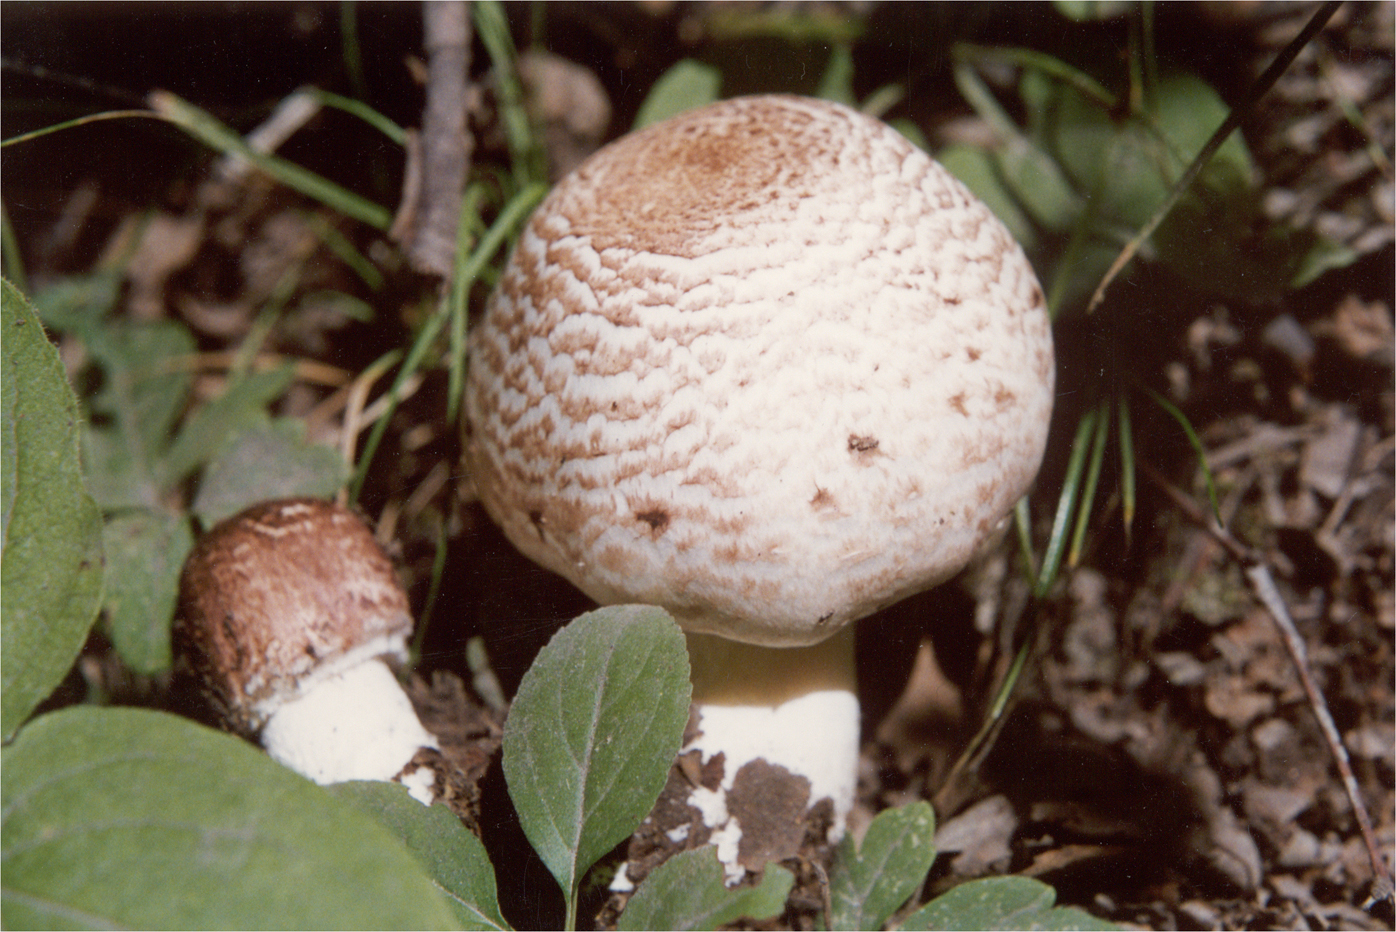 双环林地蘑菇(其他生物相关)